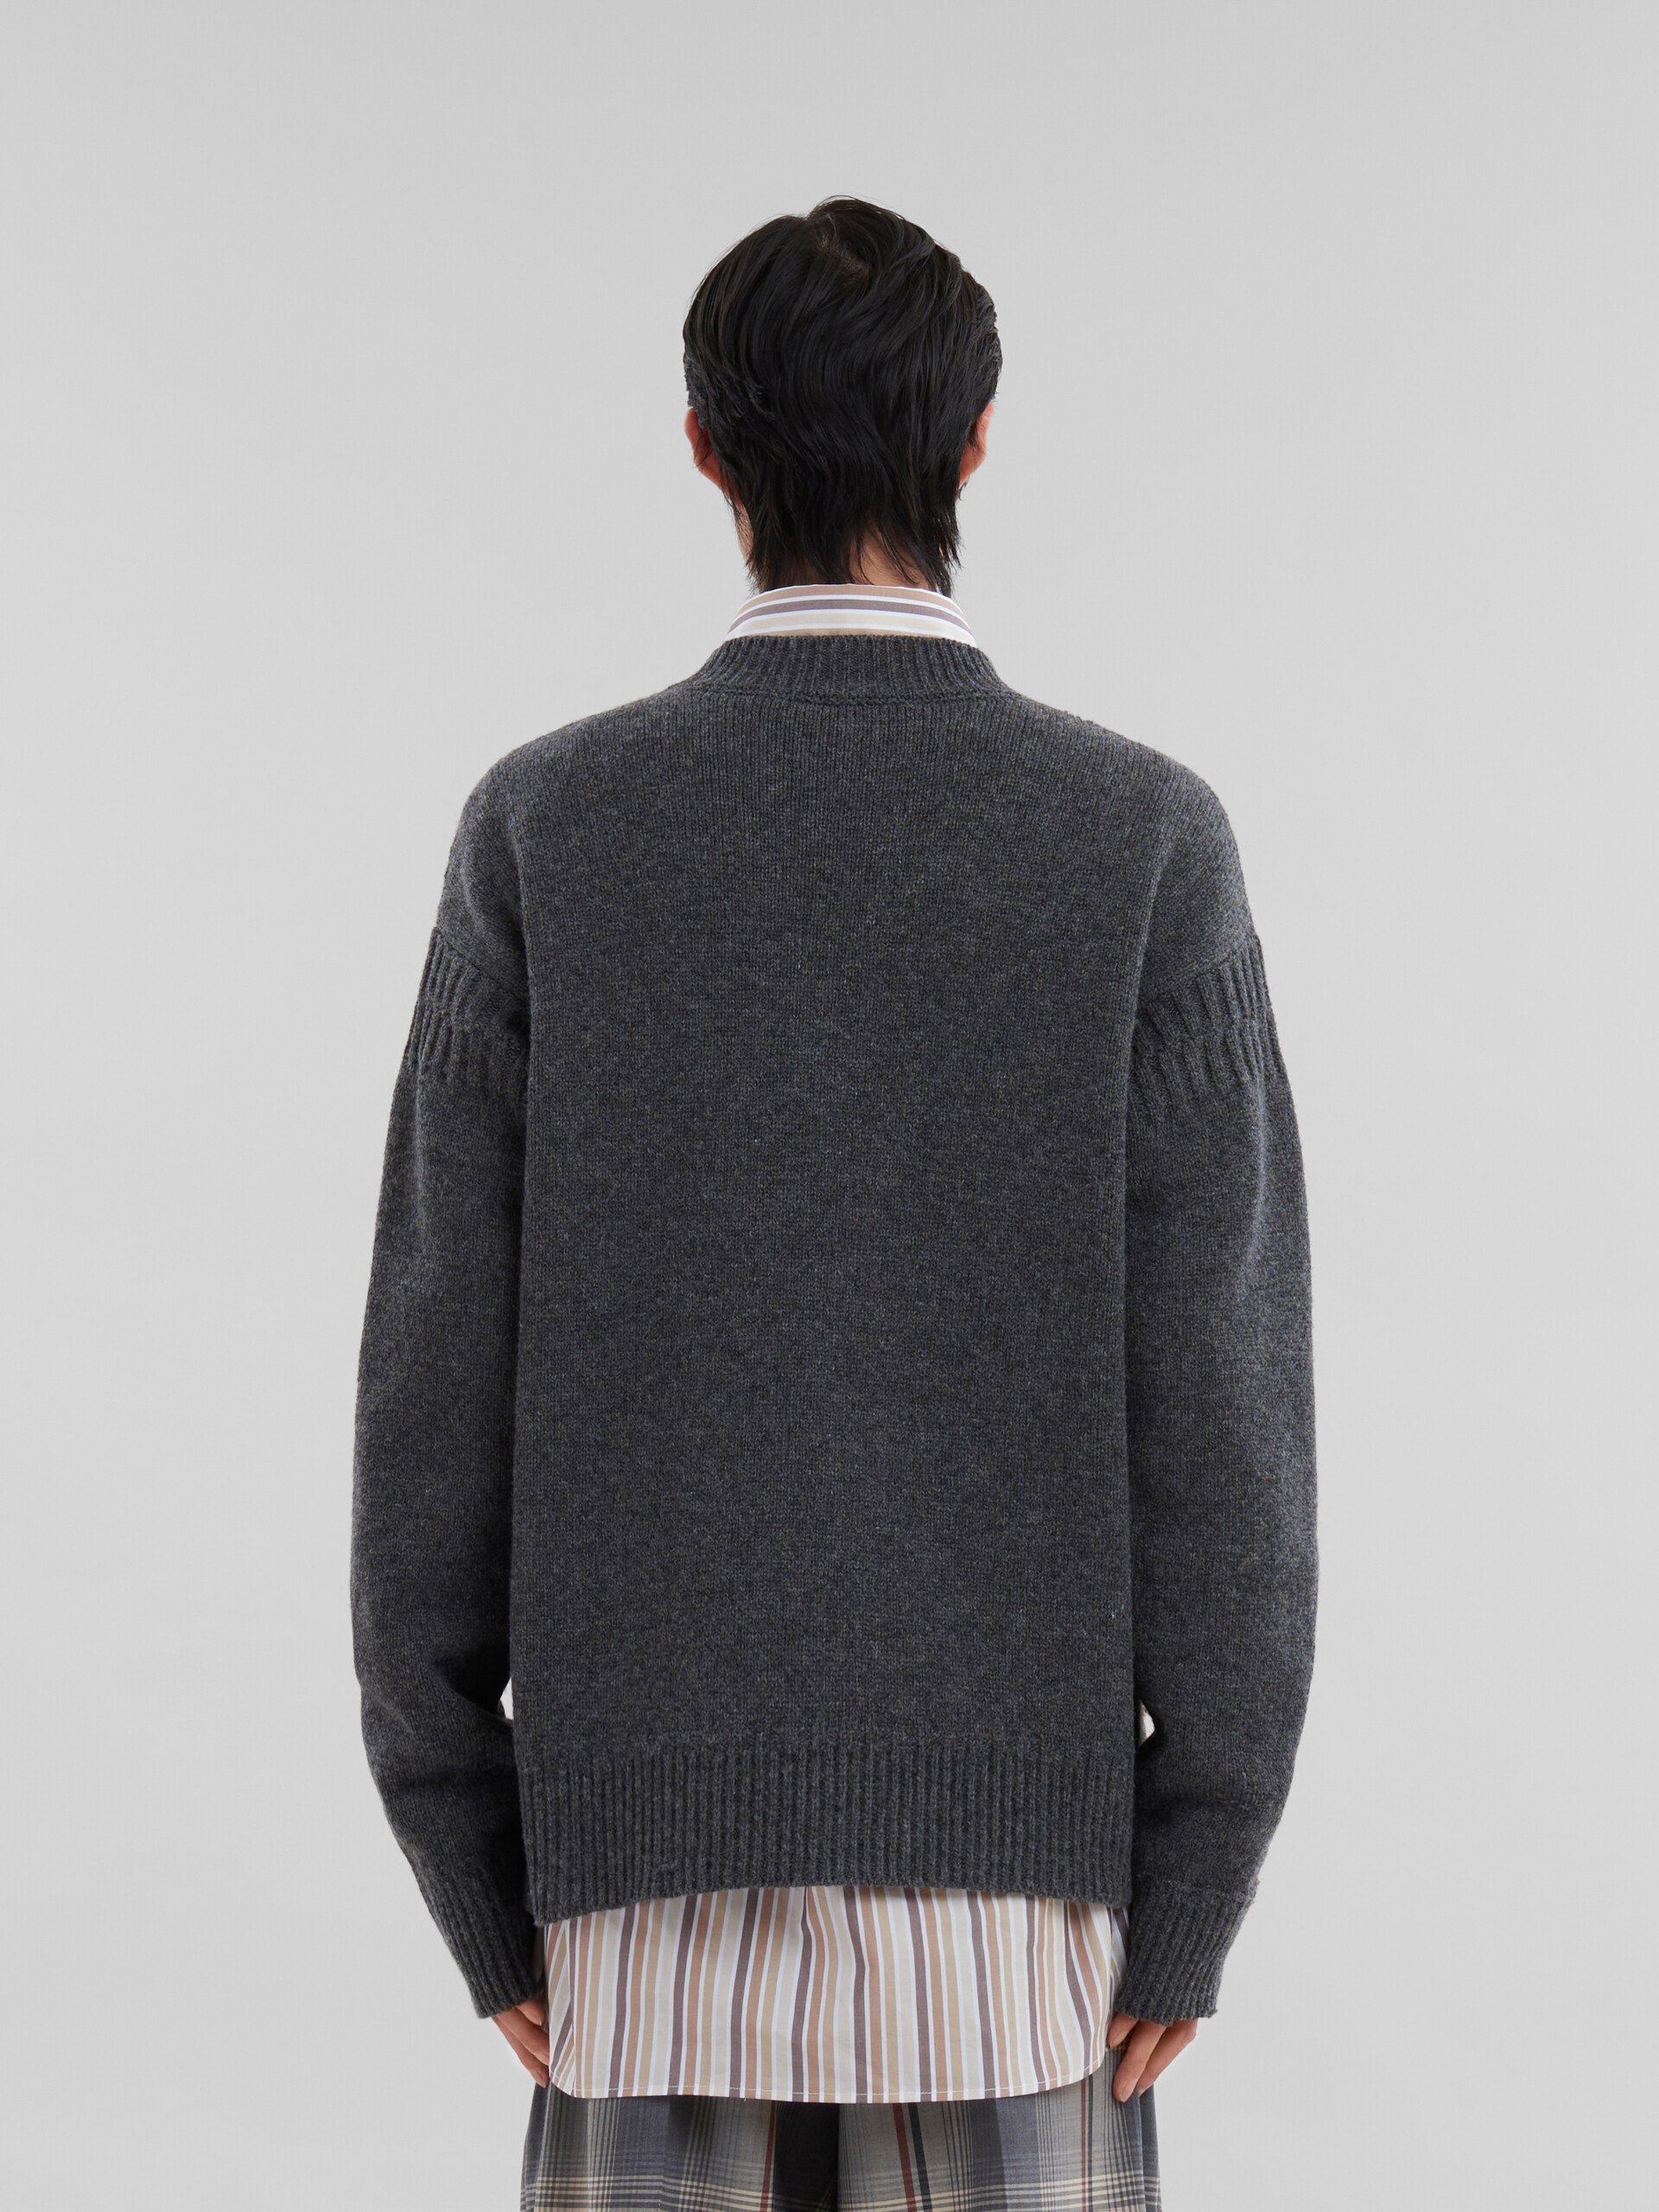 Jersey gris de lana Shetland con parches efecto remiendo Marni - jerseys - Image 3